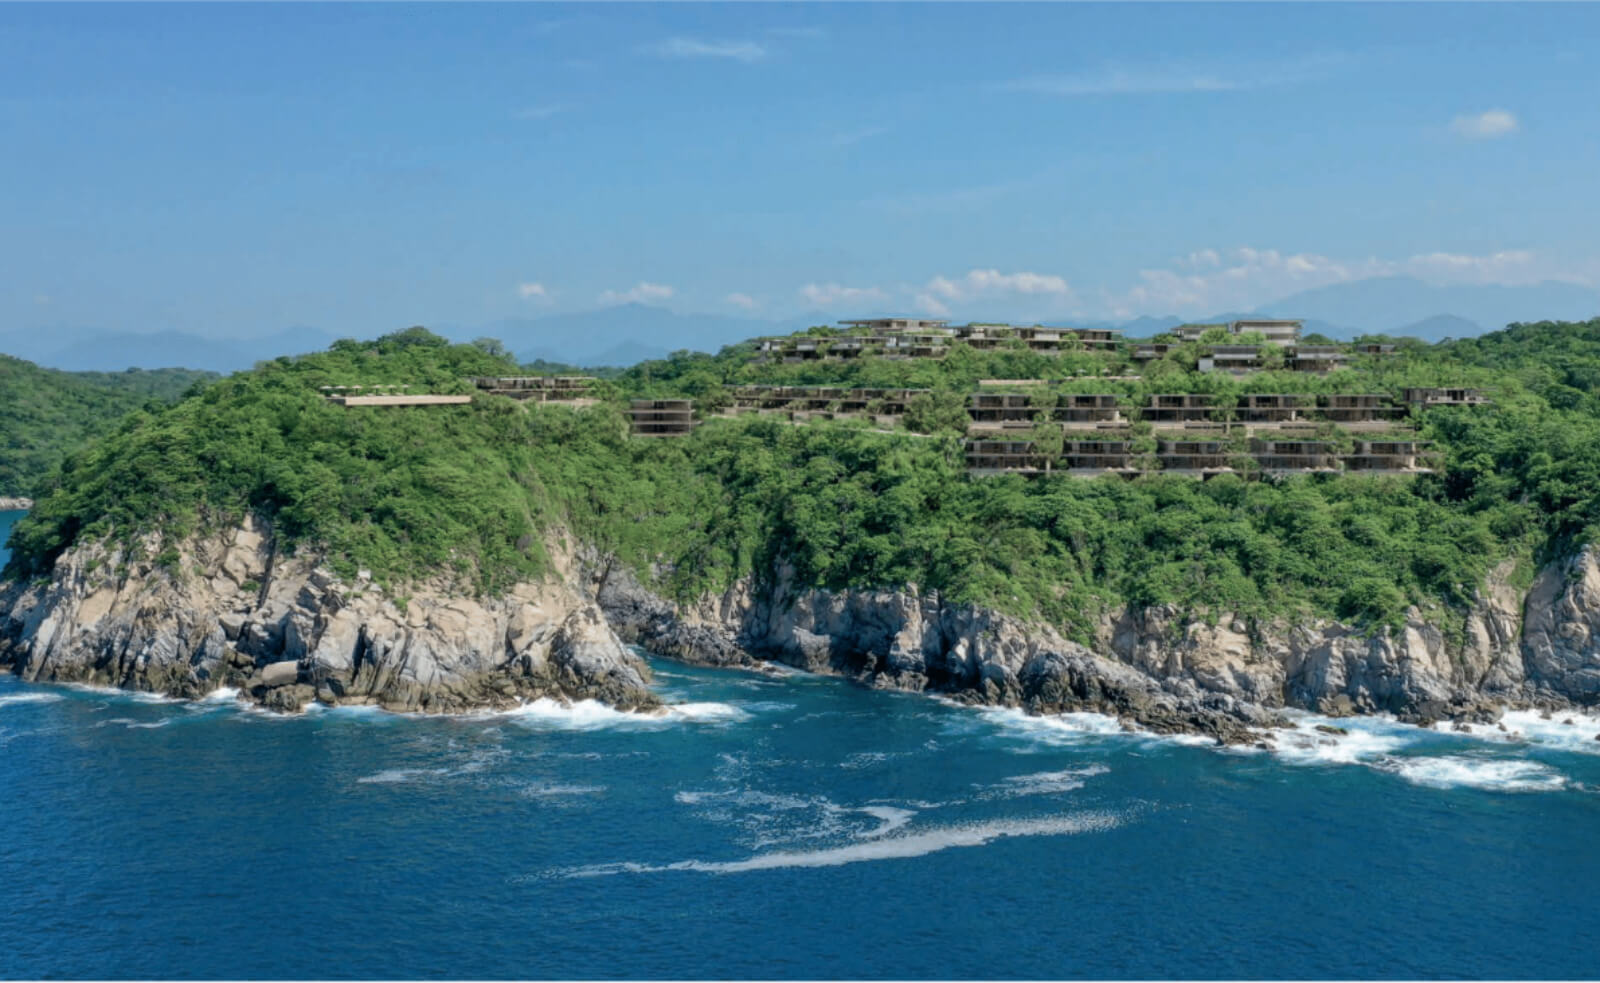 Condo con vista al océano, jardín y alberca privada en venta Huatulco.